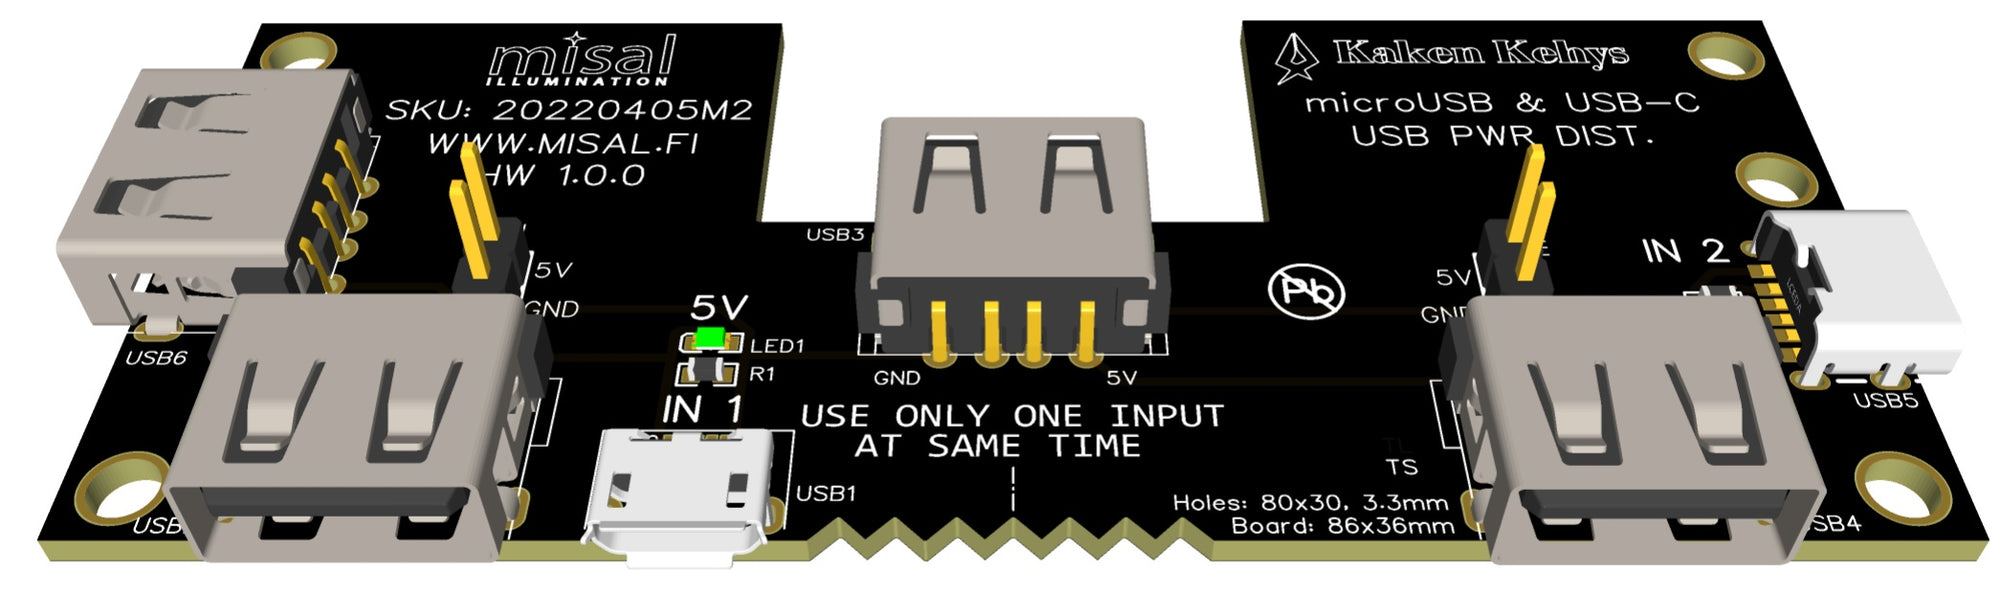 USB power distribution board 1x microUSB, 1x USB-C, 4x USB-A